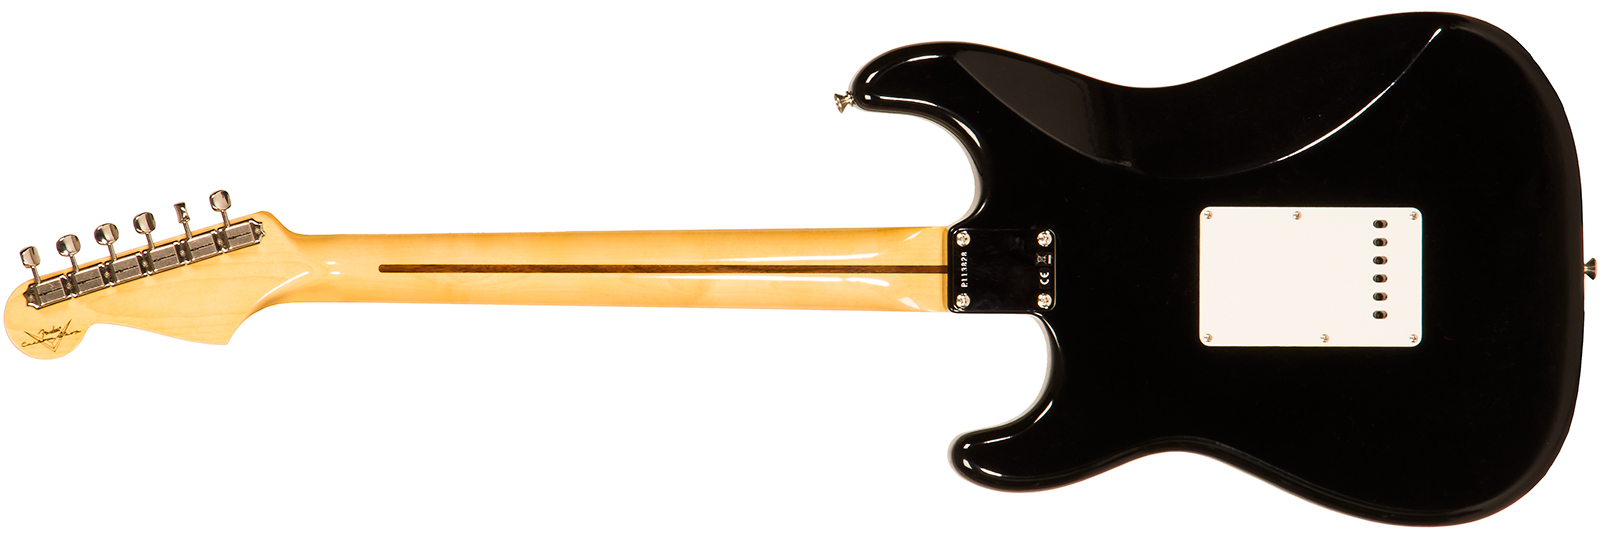 Fender Custom Shop Strat 1958 3s Trem Mn #r113828 - Closet Classic Black - Guitare Électrique Forme Str - Variation 1